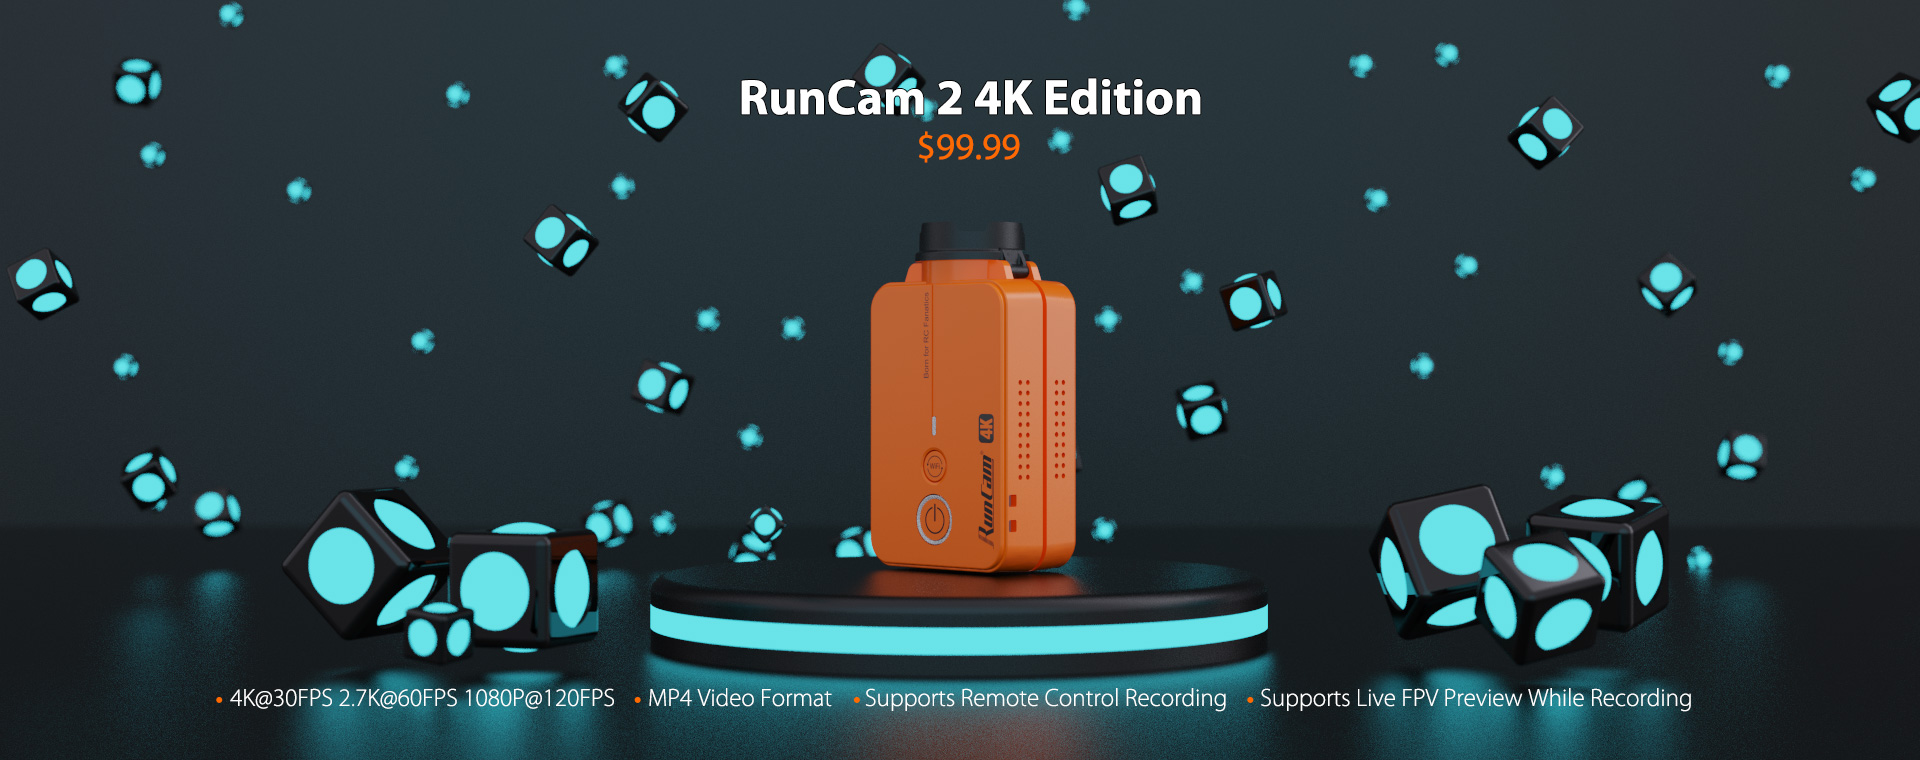 RunCam 2 4K